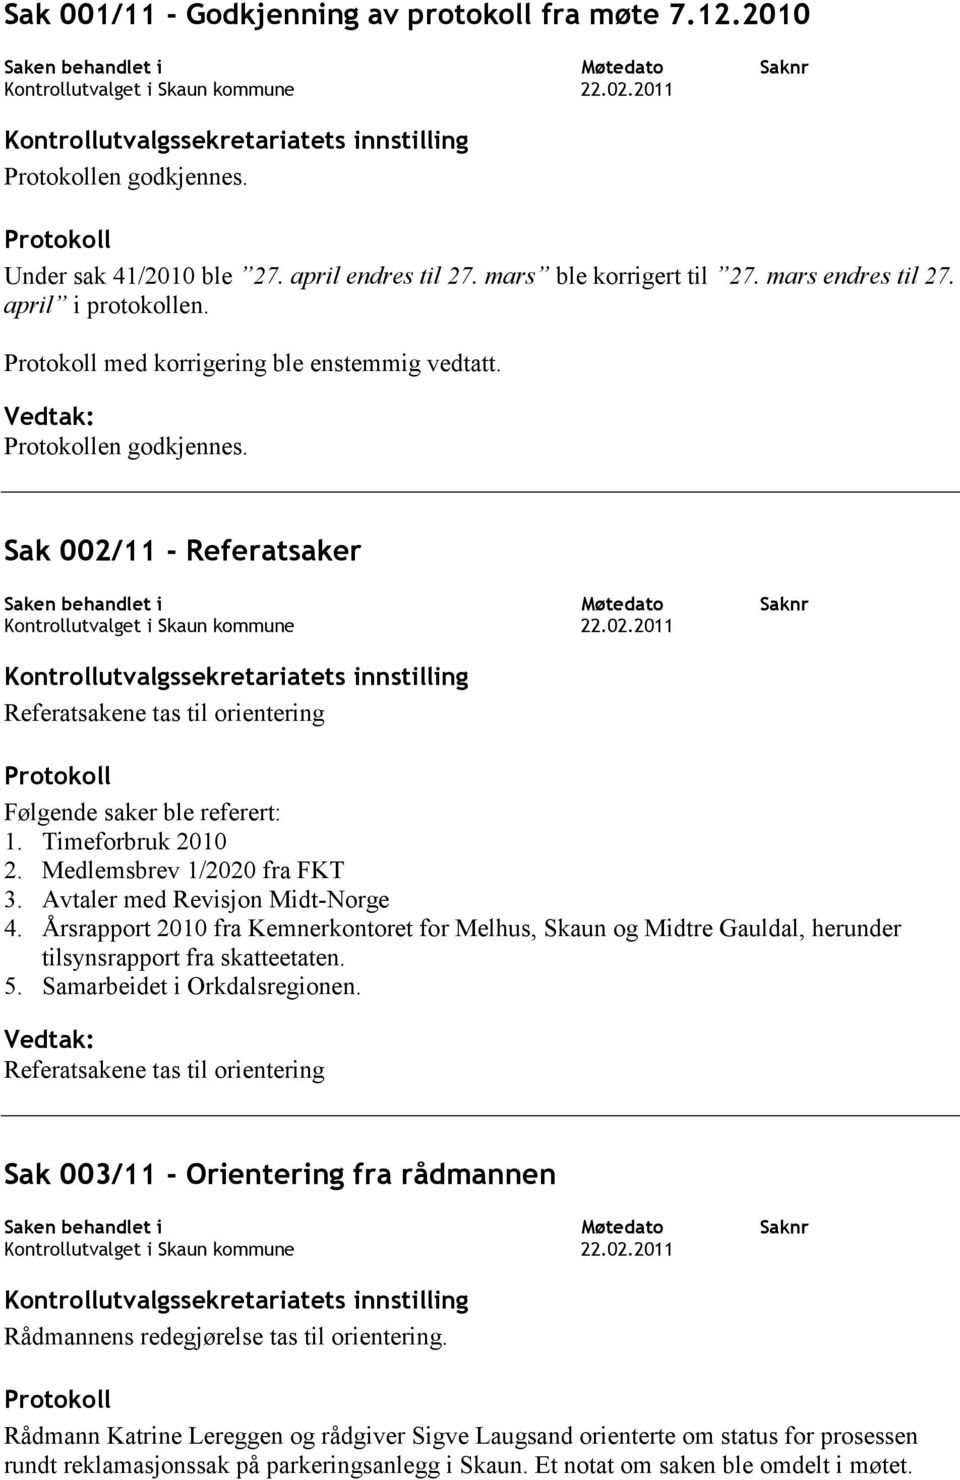 Avtaler med Revisjon Midt-Norge 4. Årsrapport 2010 fra Kemnerkontoret for Melhus, Skaun og Midtre Gauldal, herunder tilsynsrapport fra skatteetaten. 5. Samarbeidet i Orkdalsregionen.